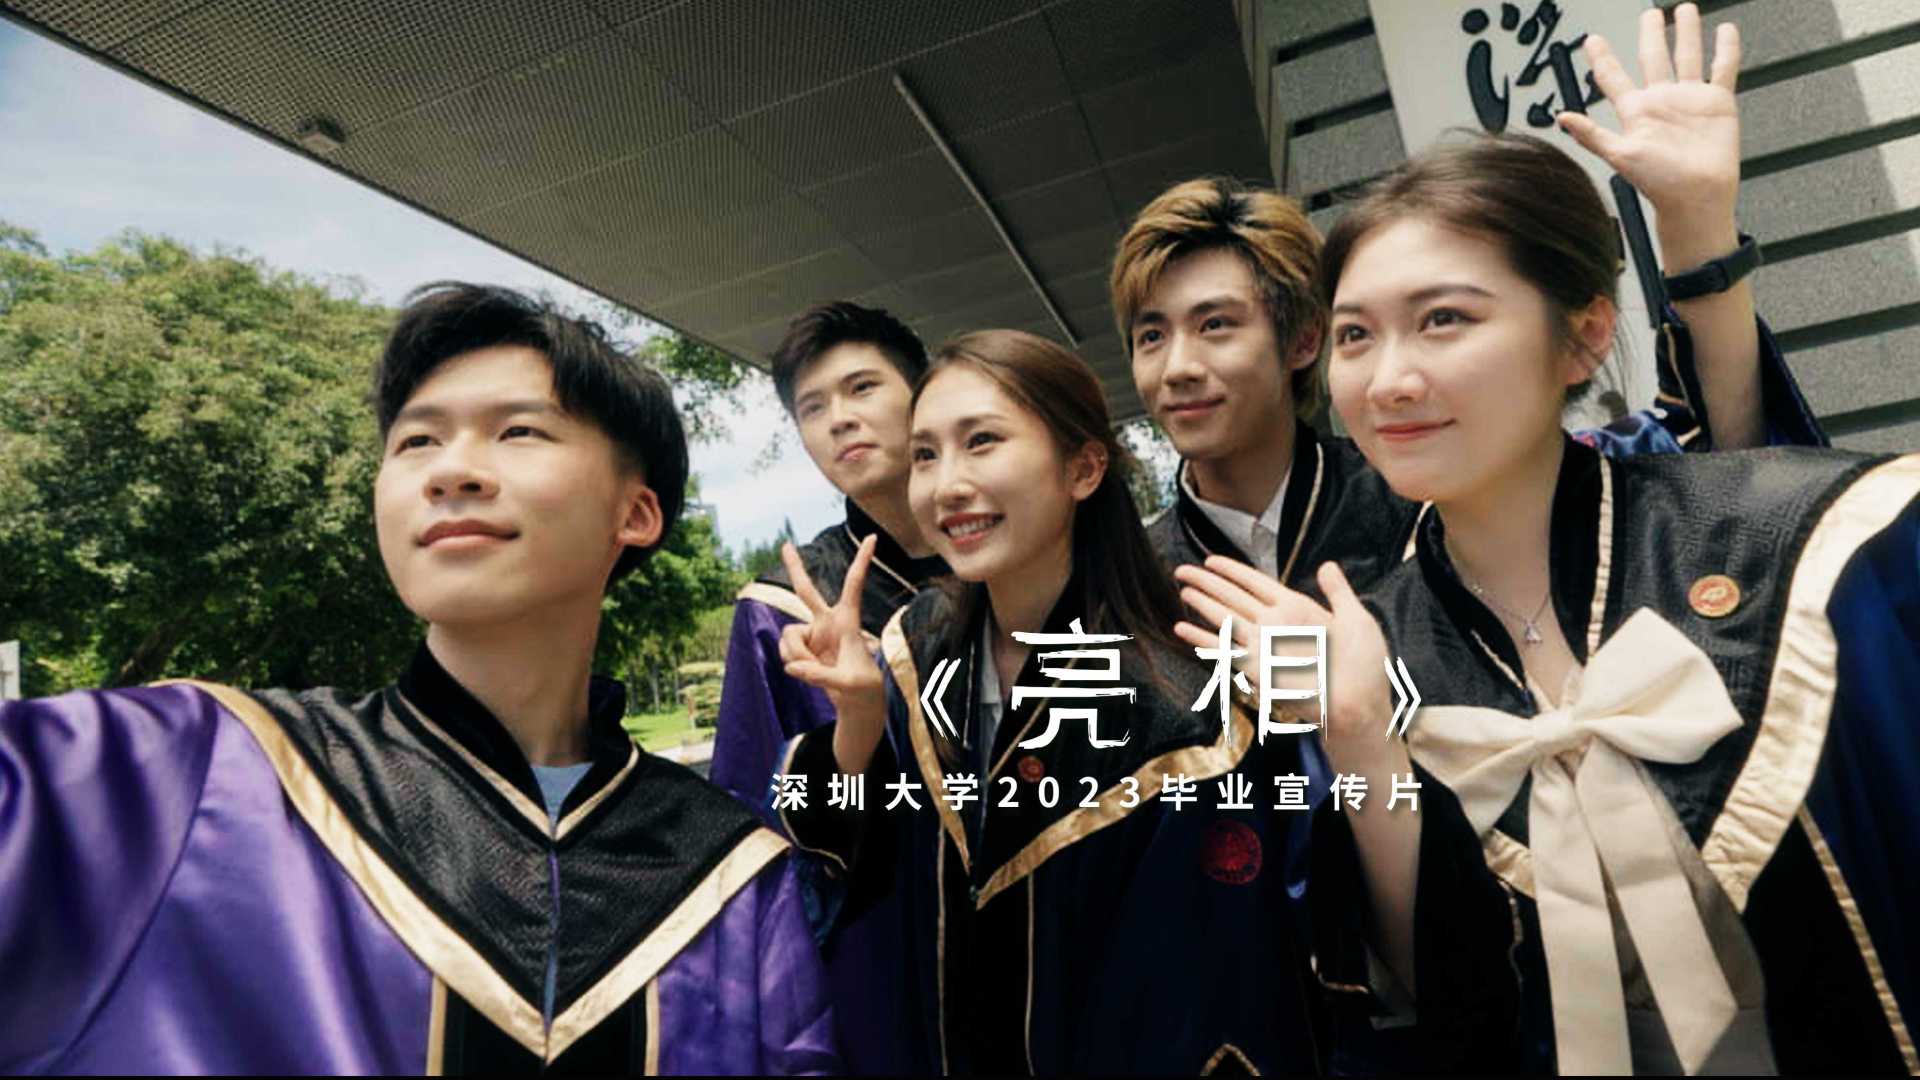 深圳大学2023毕业宣传片《亮相》